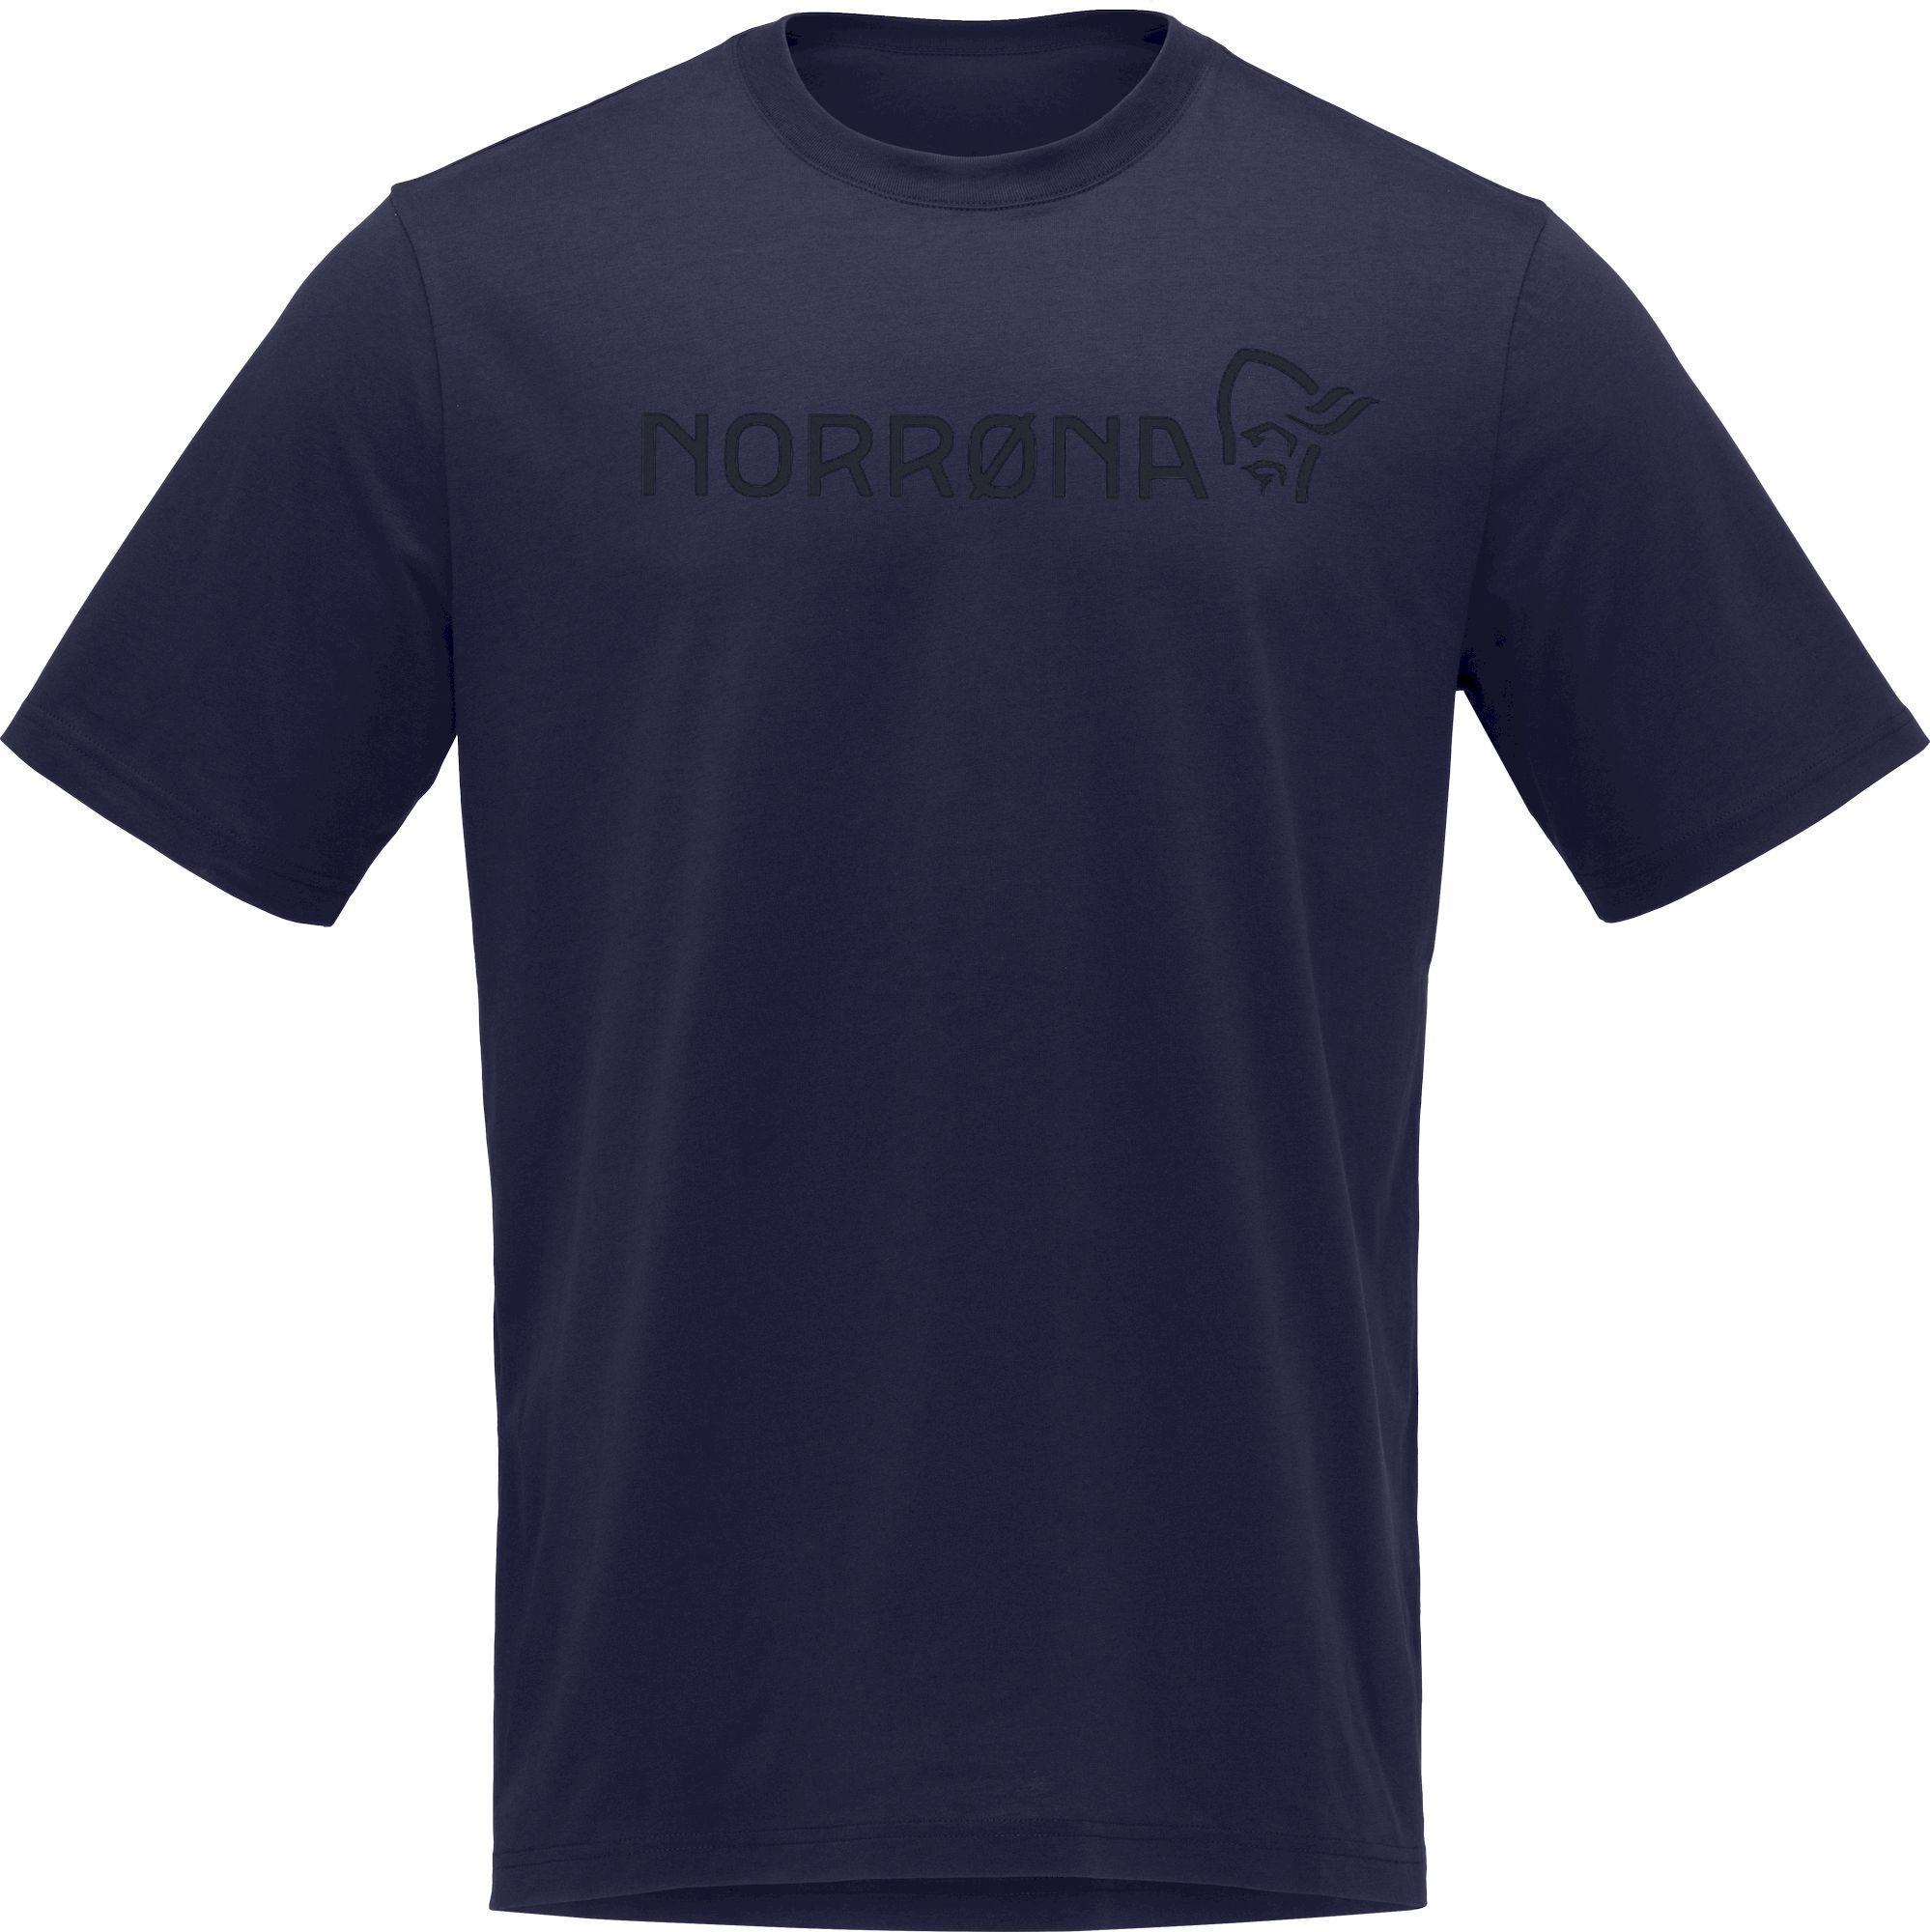 Norrona /29 Cotton Norrøna Viking - T-shirt Herr